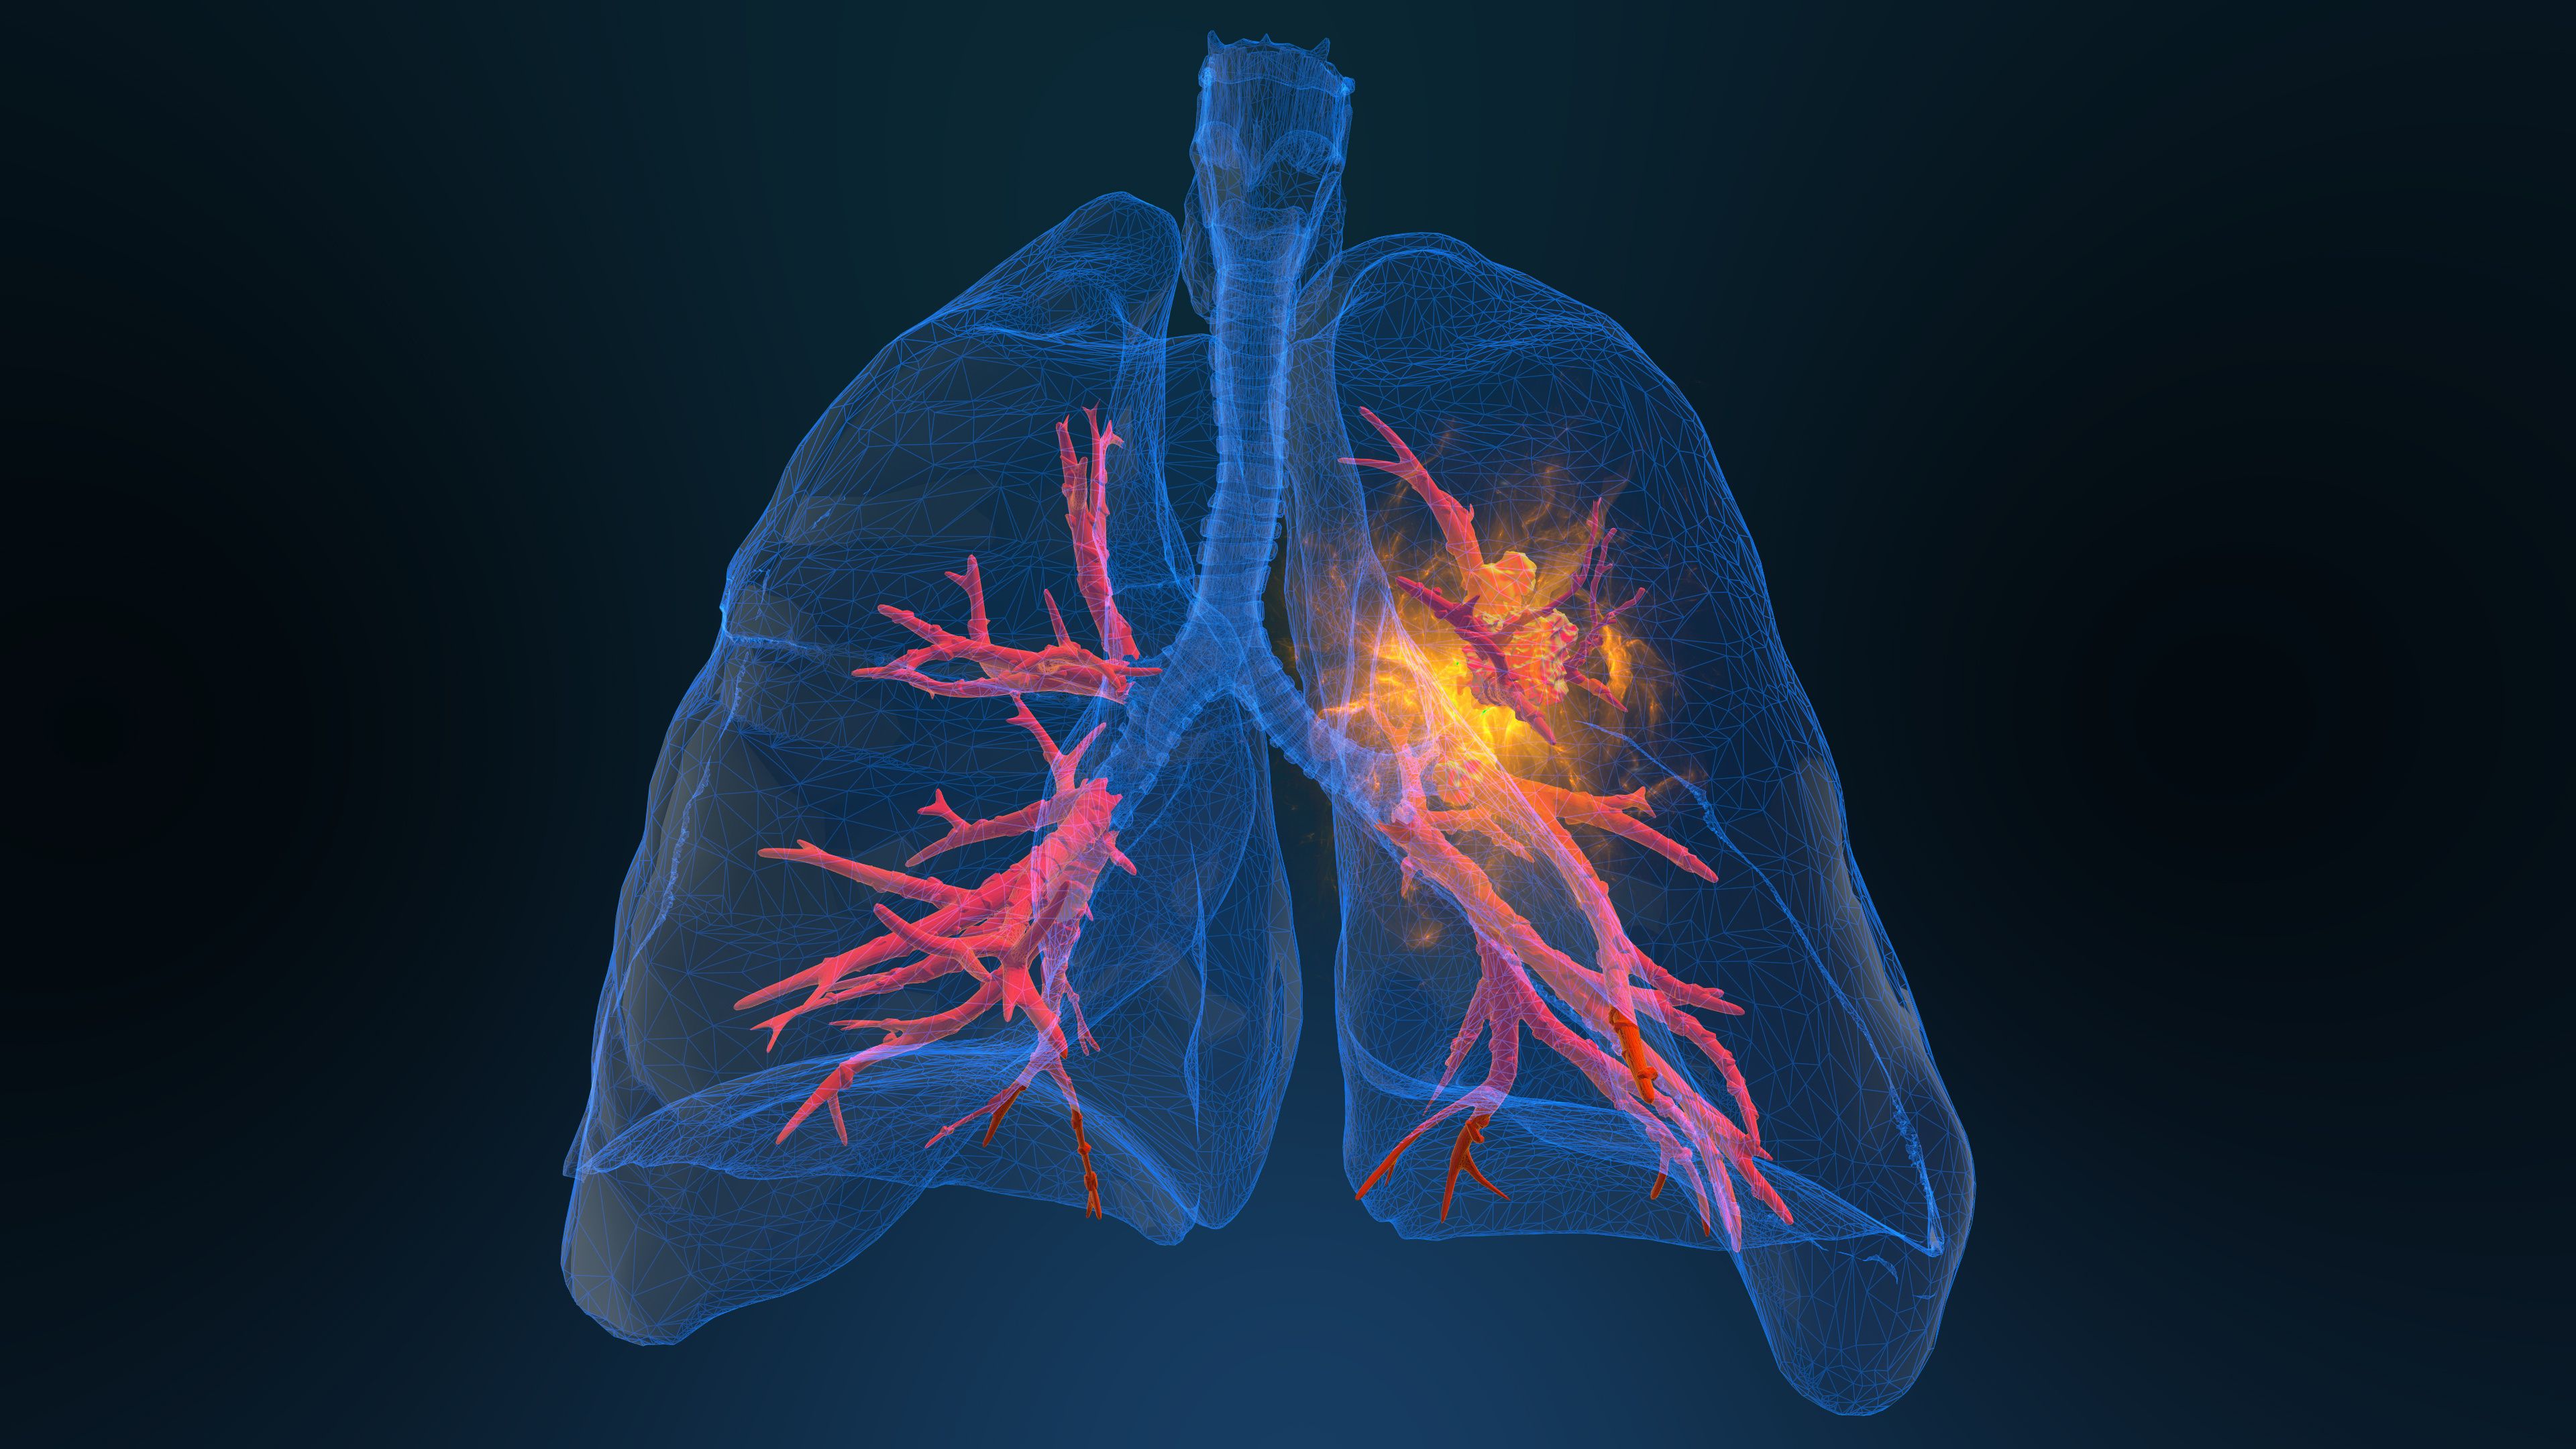 Lung cancer | Image credit: appledesign - stock.adobe.com